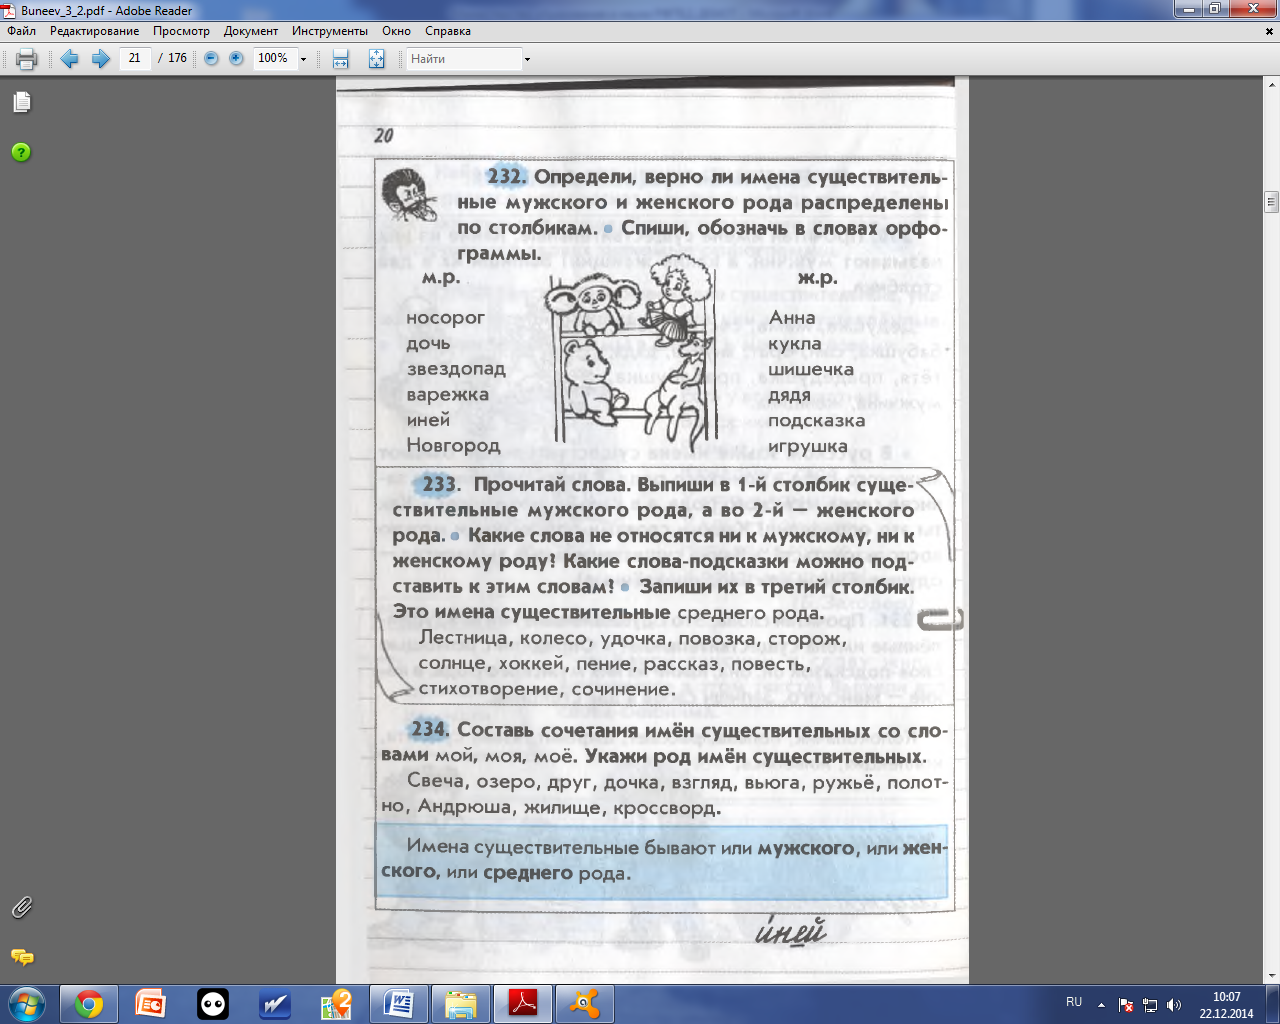 Конспект урока по русскому языку для 3 класса по программе Бунеева. Род имени существительного.